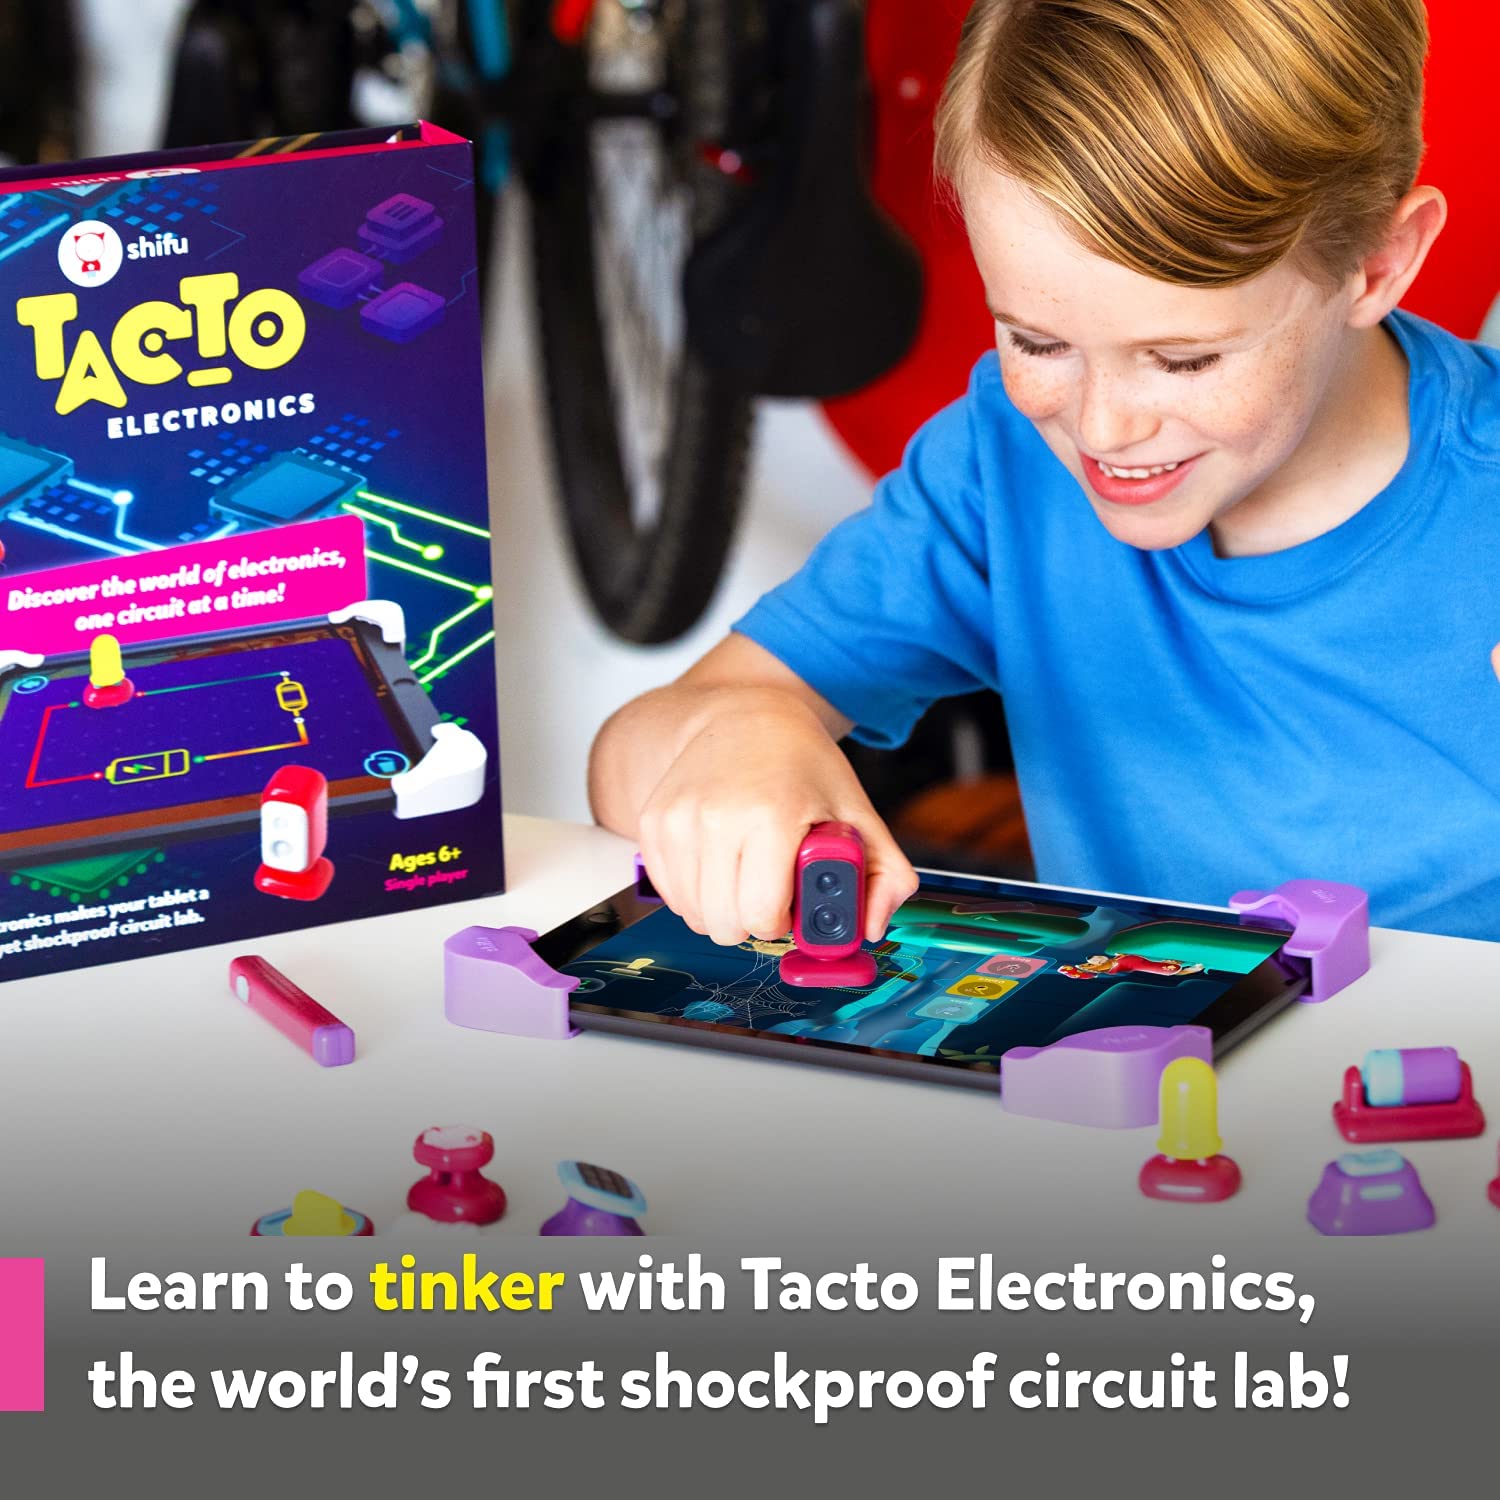 Tacto - Electronics